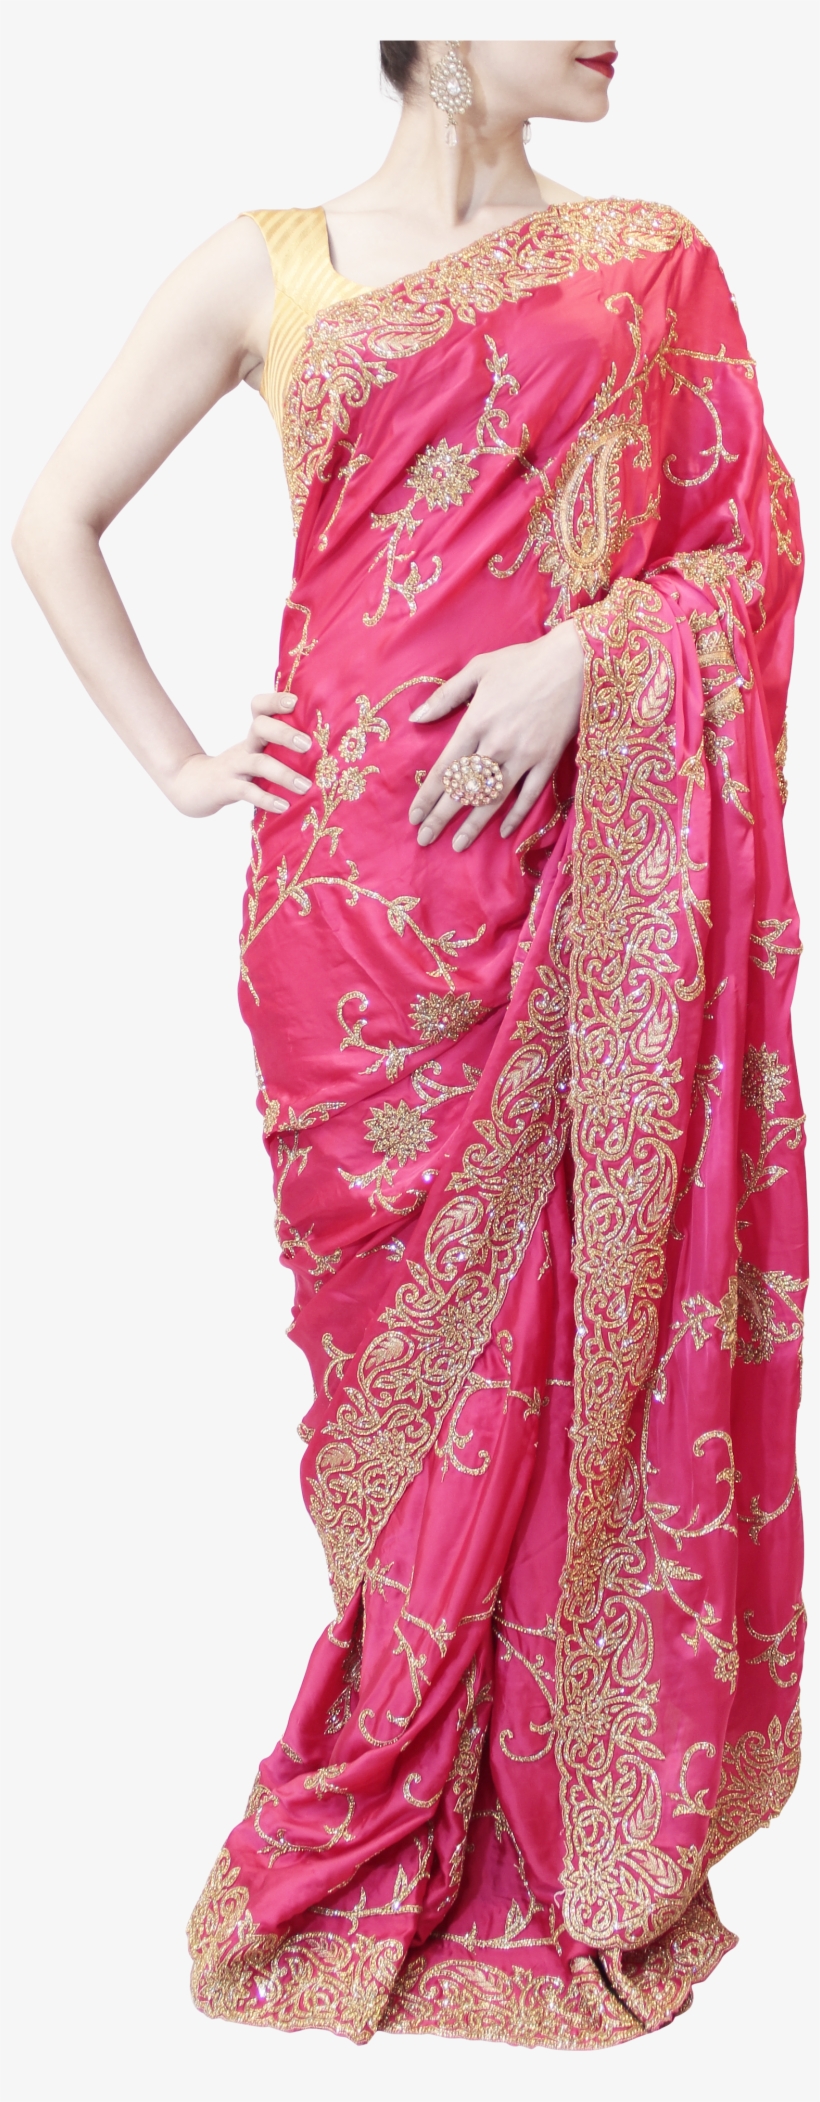 Pink Saree - Pink Saree Png, transparent png #9199583